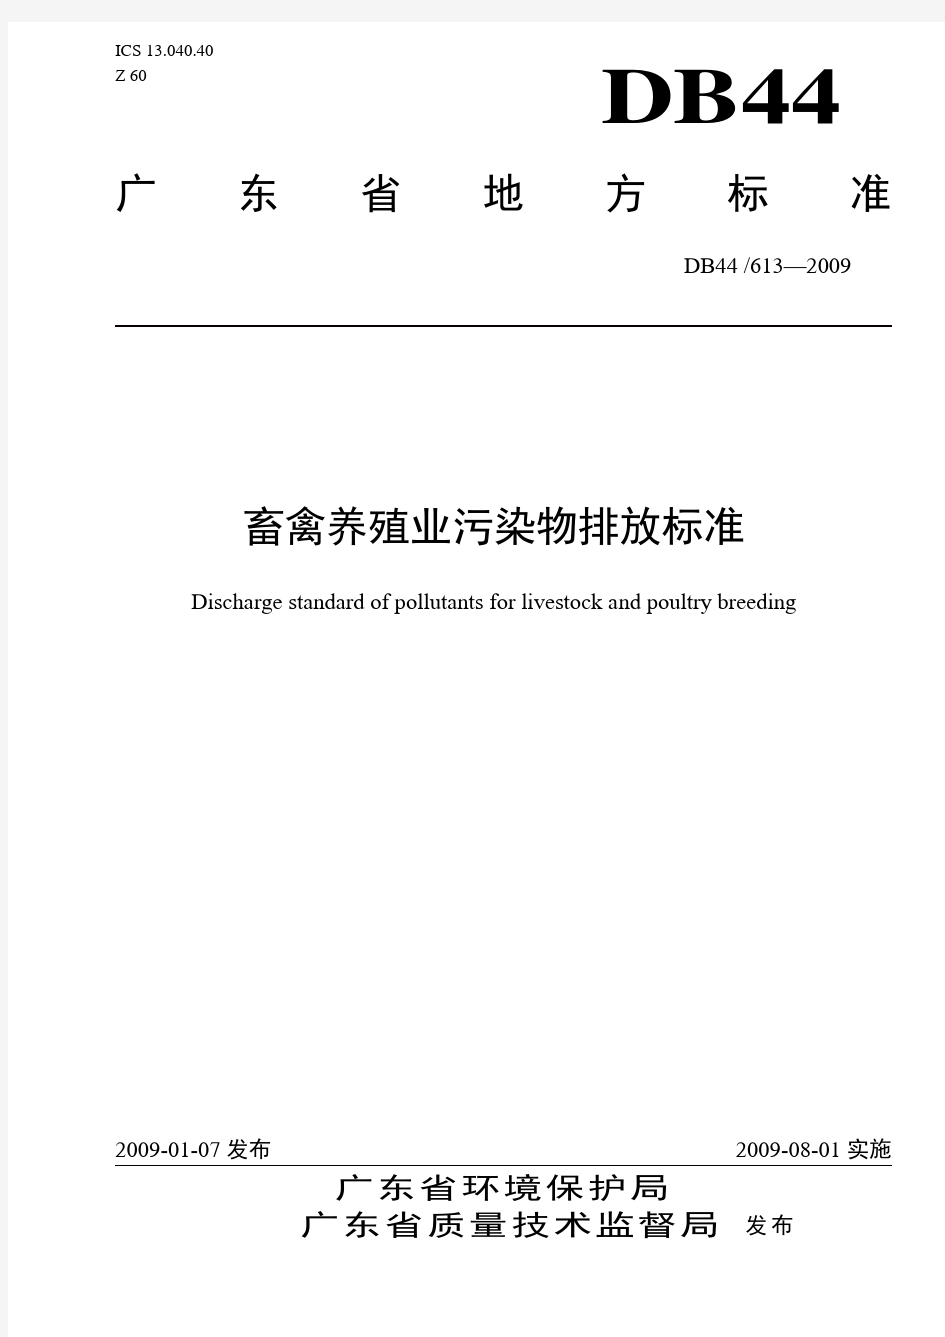 广东省《畜禽养殖业污染物排放标准》(DB44 613—2009)